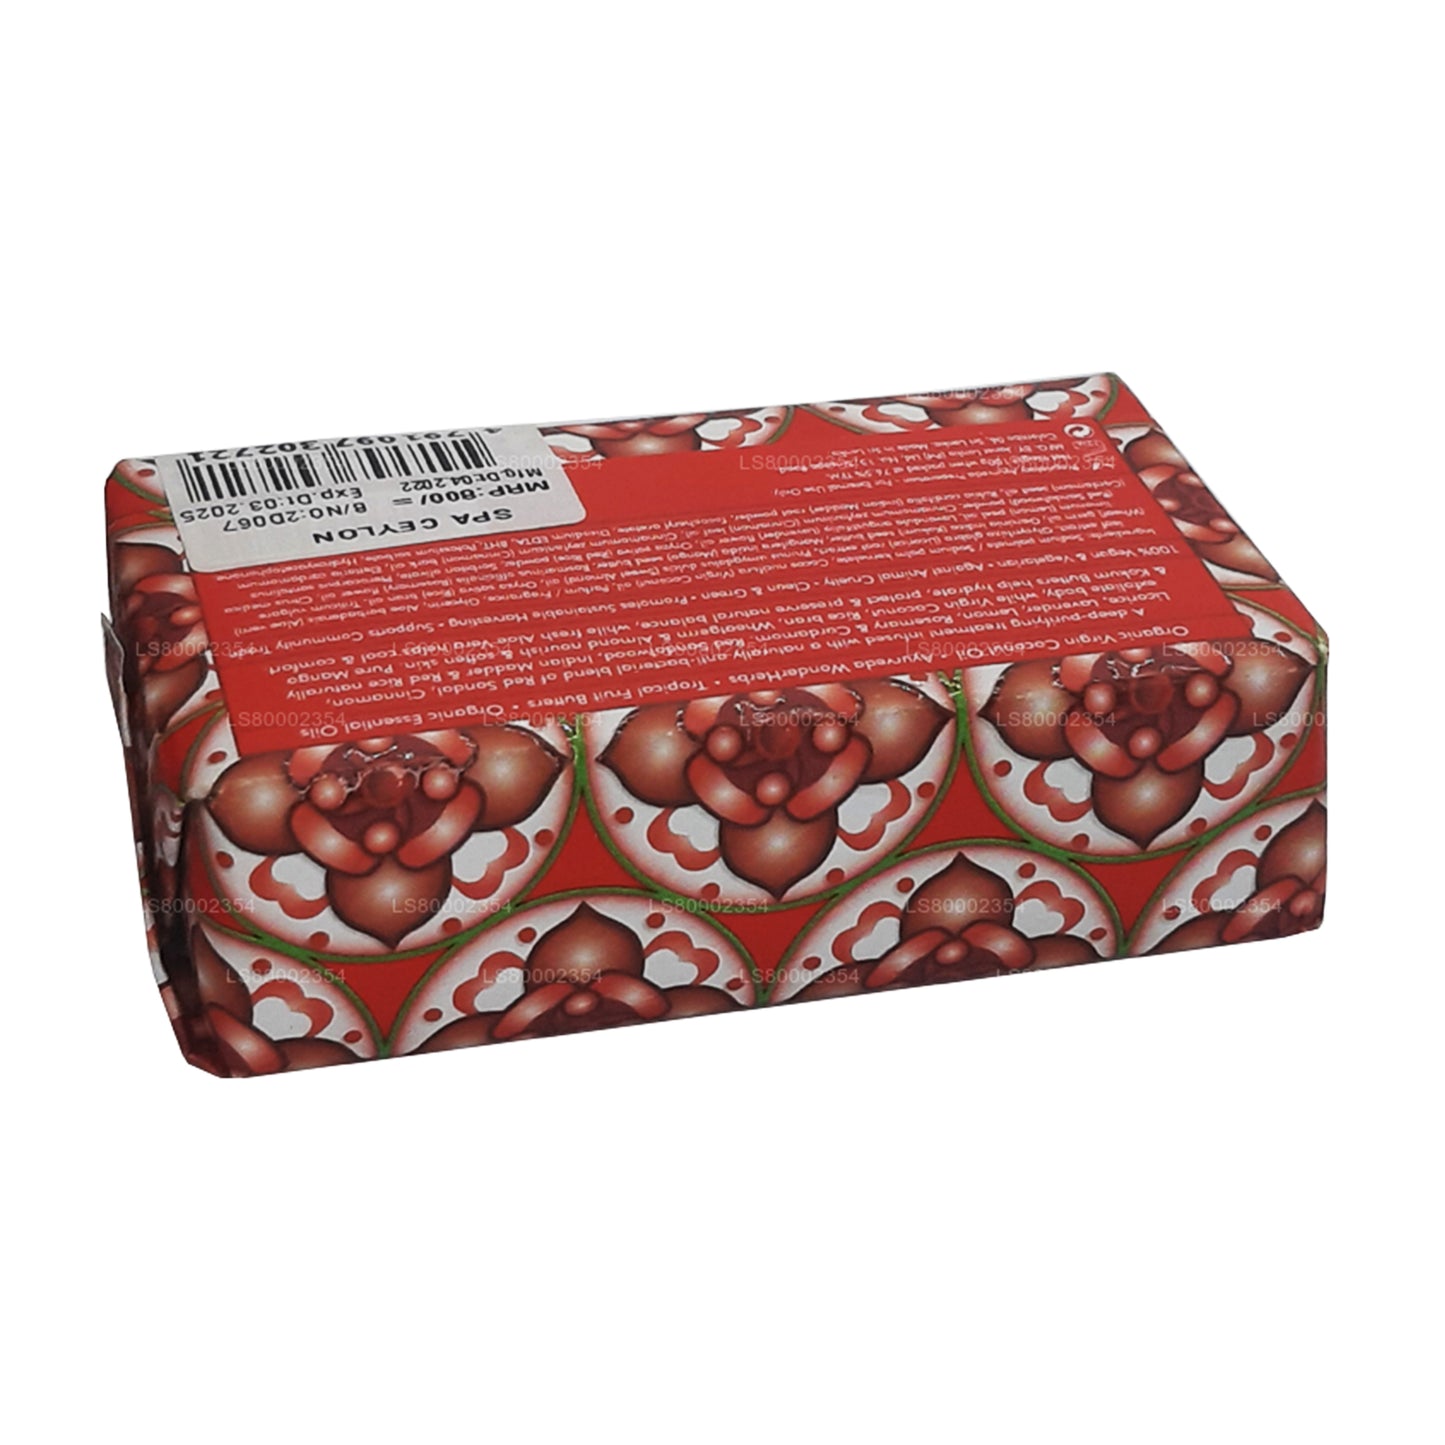 Sapone benessere esfoliante antibatterico Spa Ceylon con sandalo rosso e cannella (100 g)